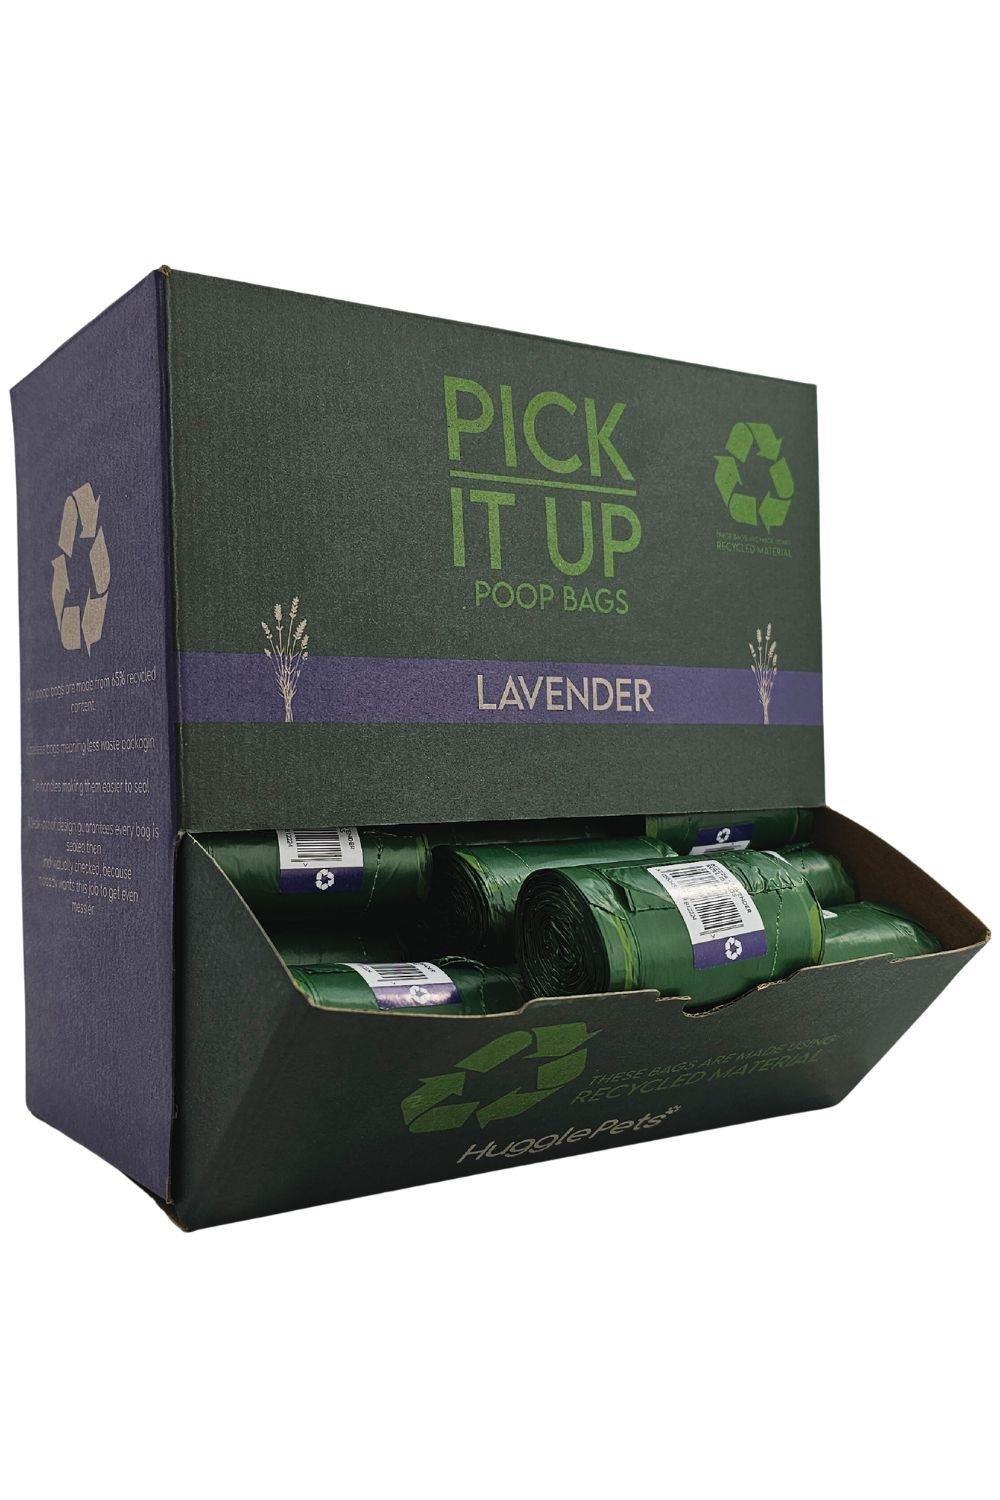 Pick It Up Lavender Dog Poop Bags - 54 Rolls (810pk)